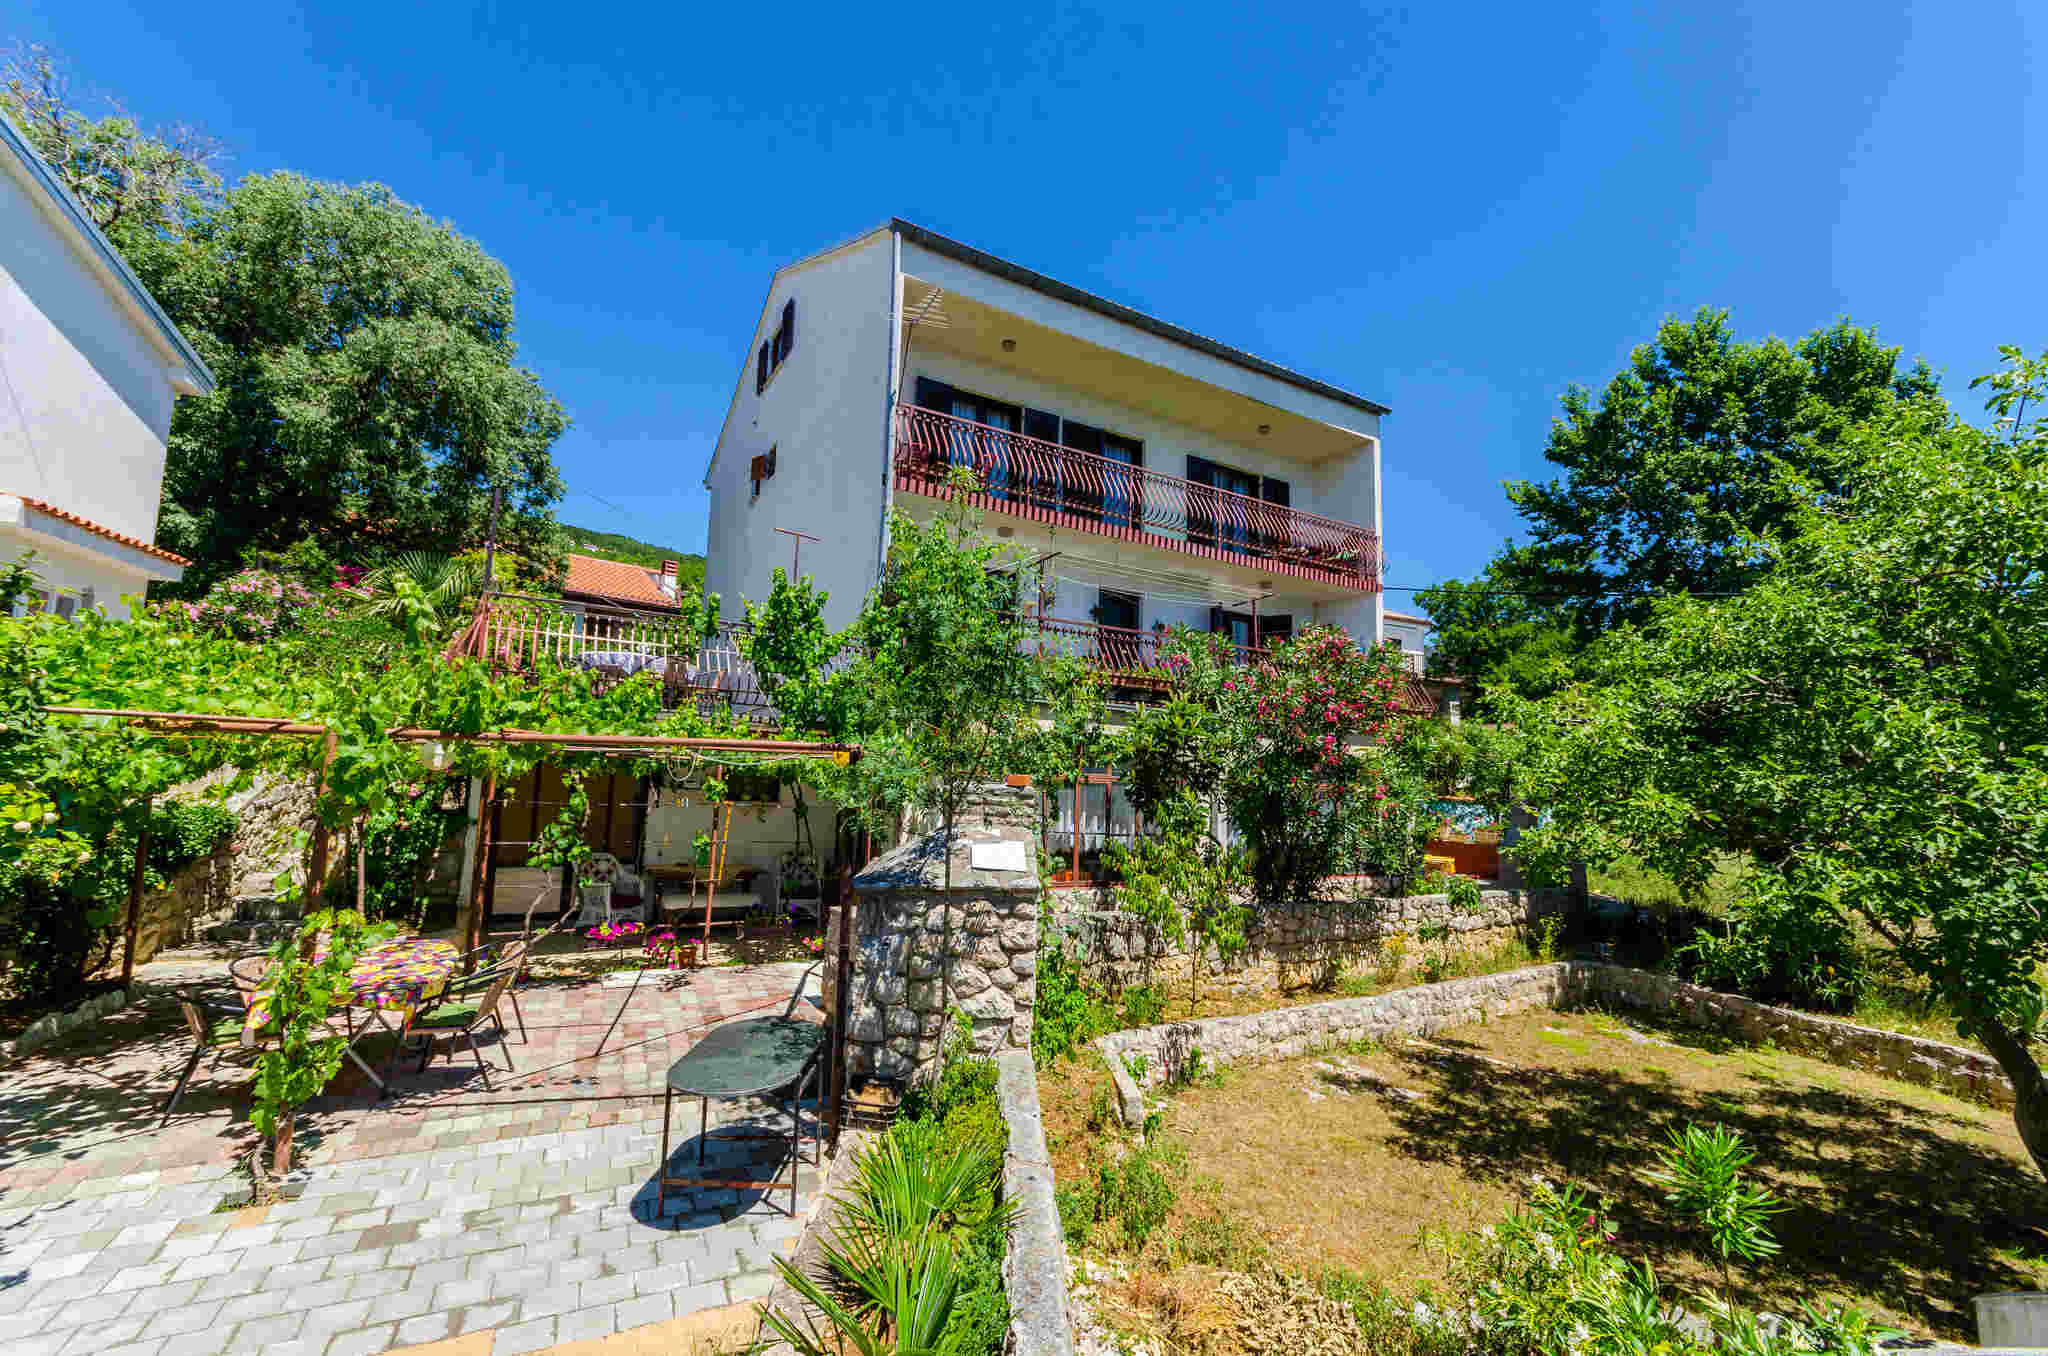 Ferienwohnung für 8 Personen ca. 80 m² i  in Kroatien